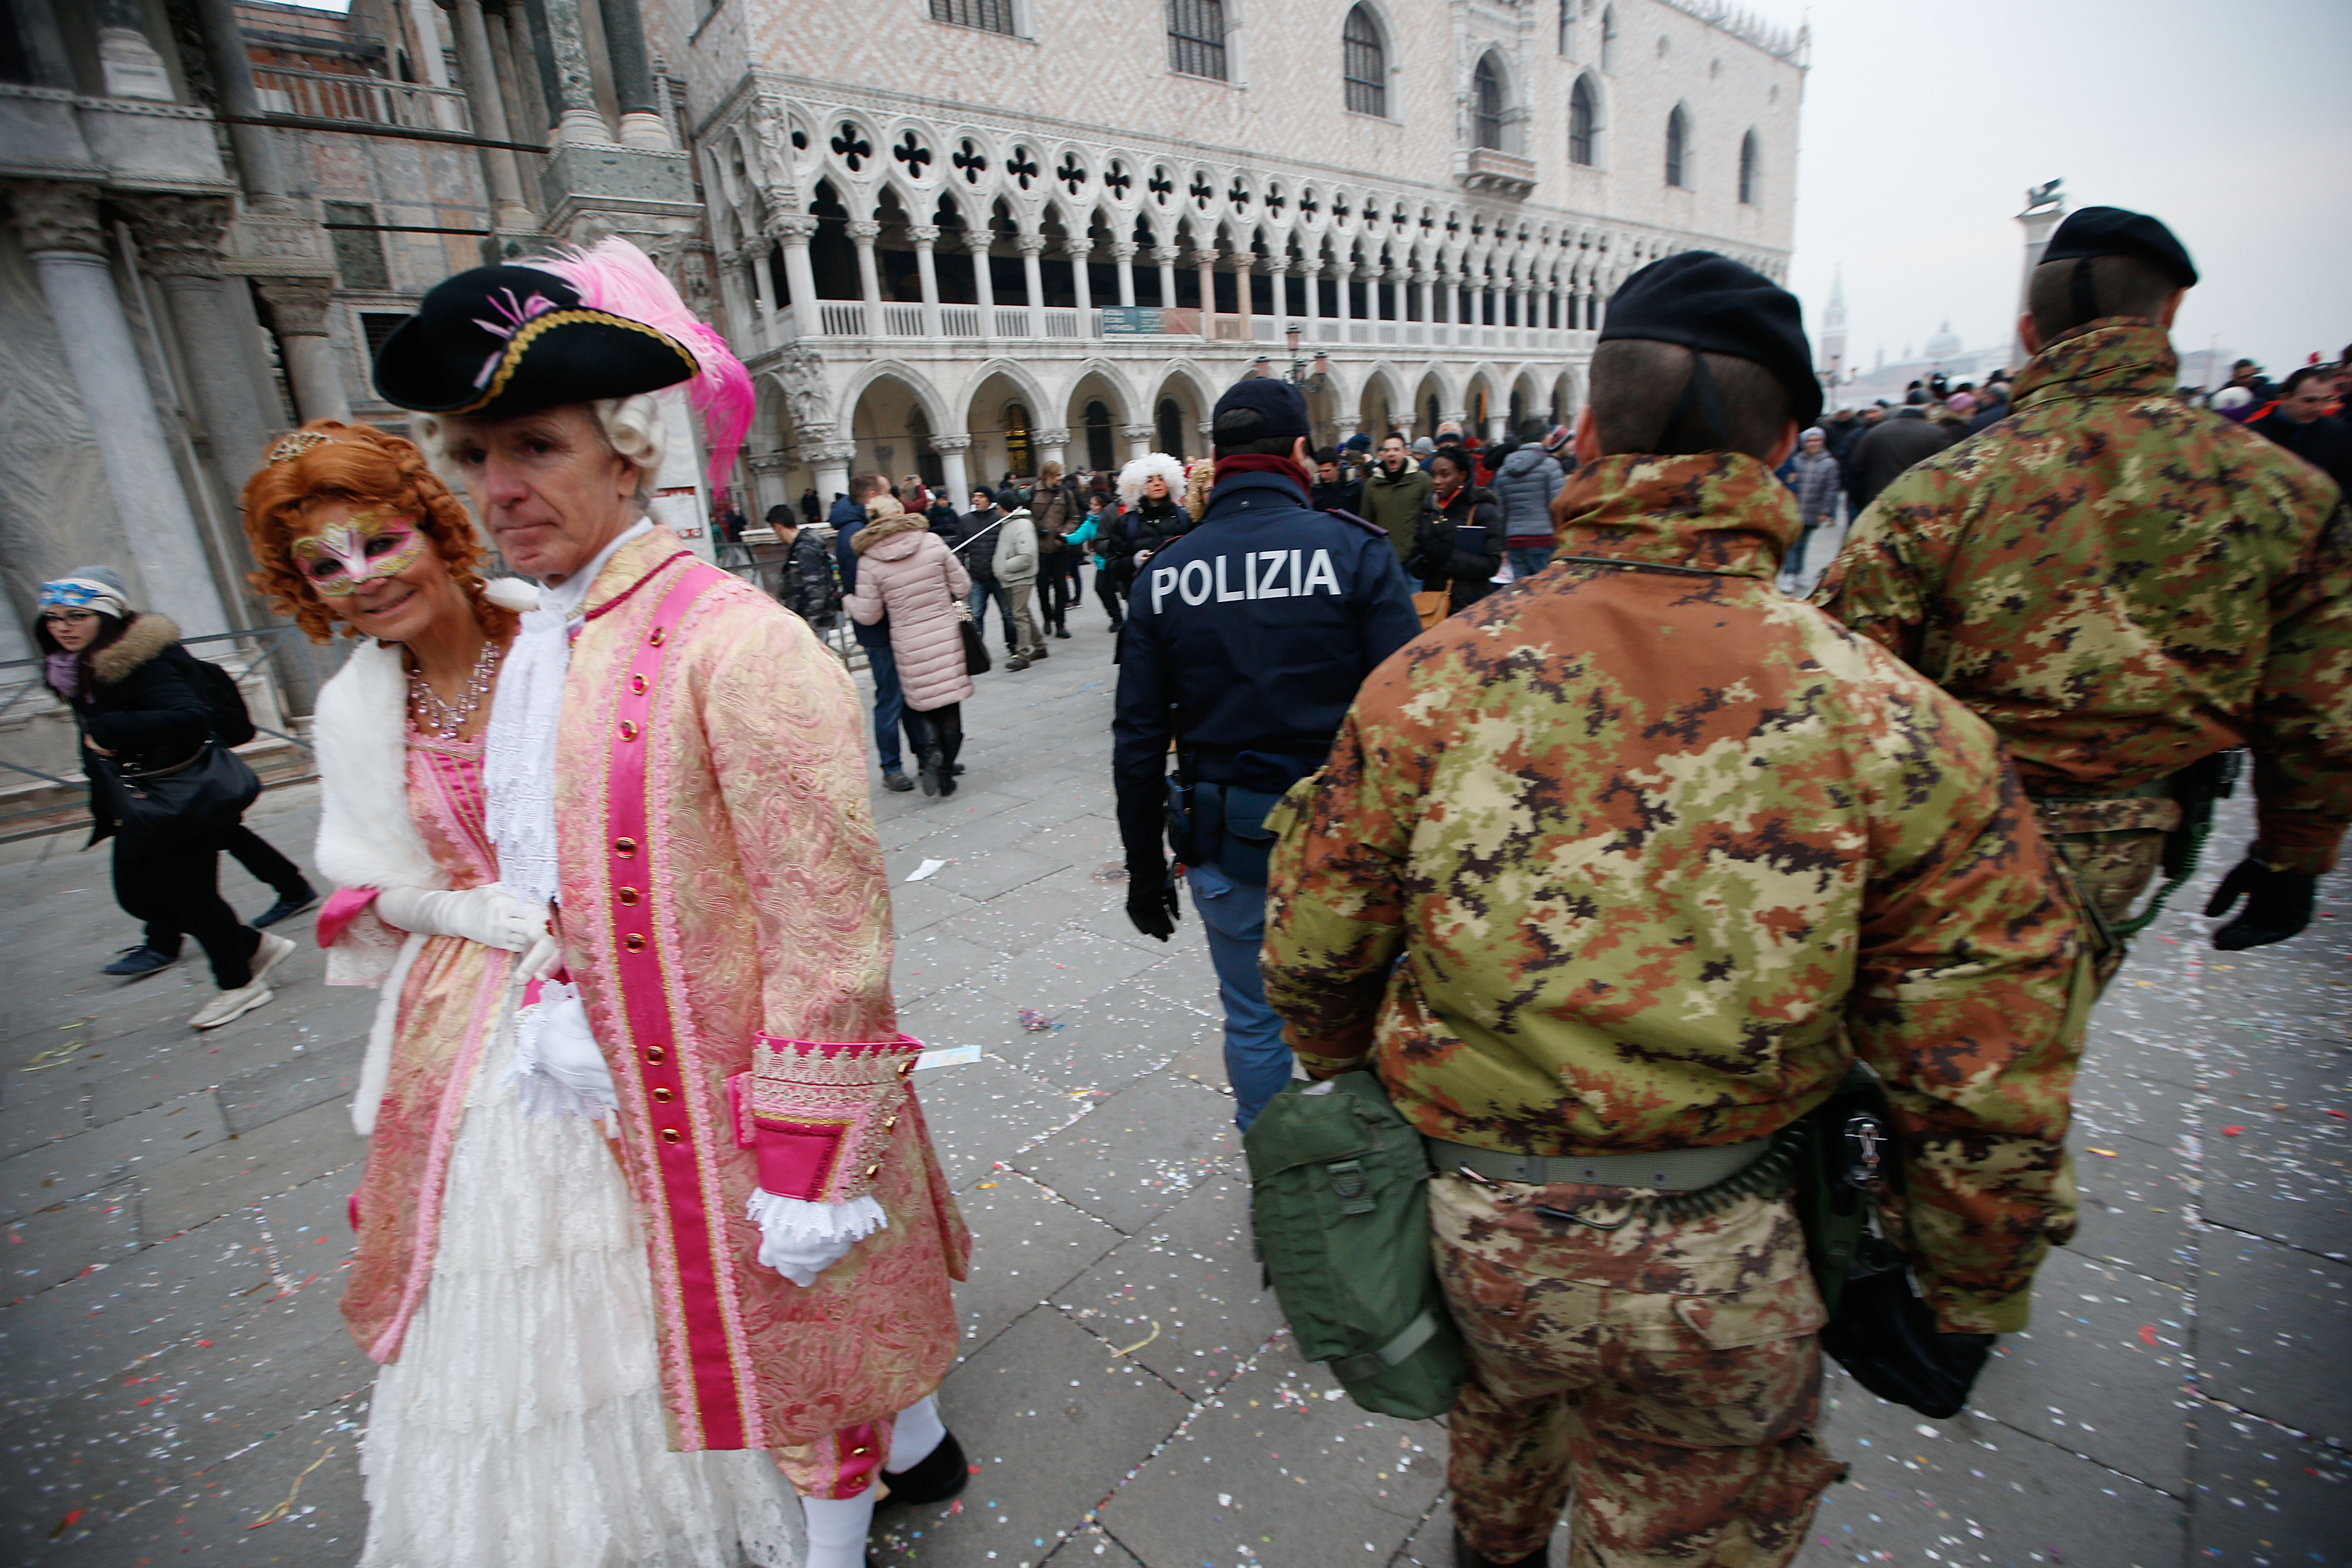 A segurança foi reforçada na cidade italiana. Até o banimento das máscaras foi cogitado, mas não foi aprovado.